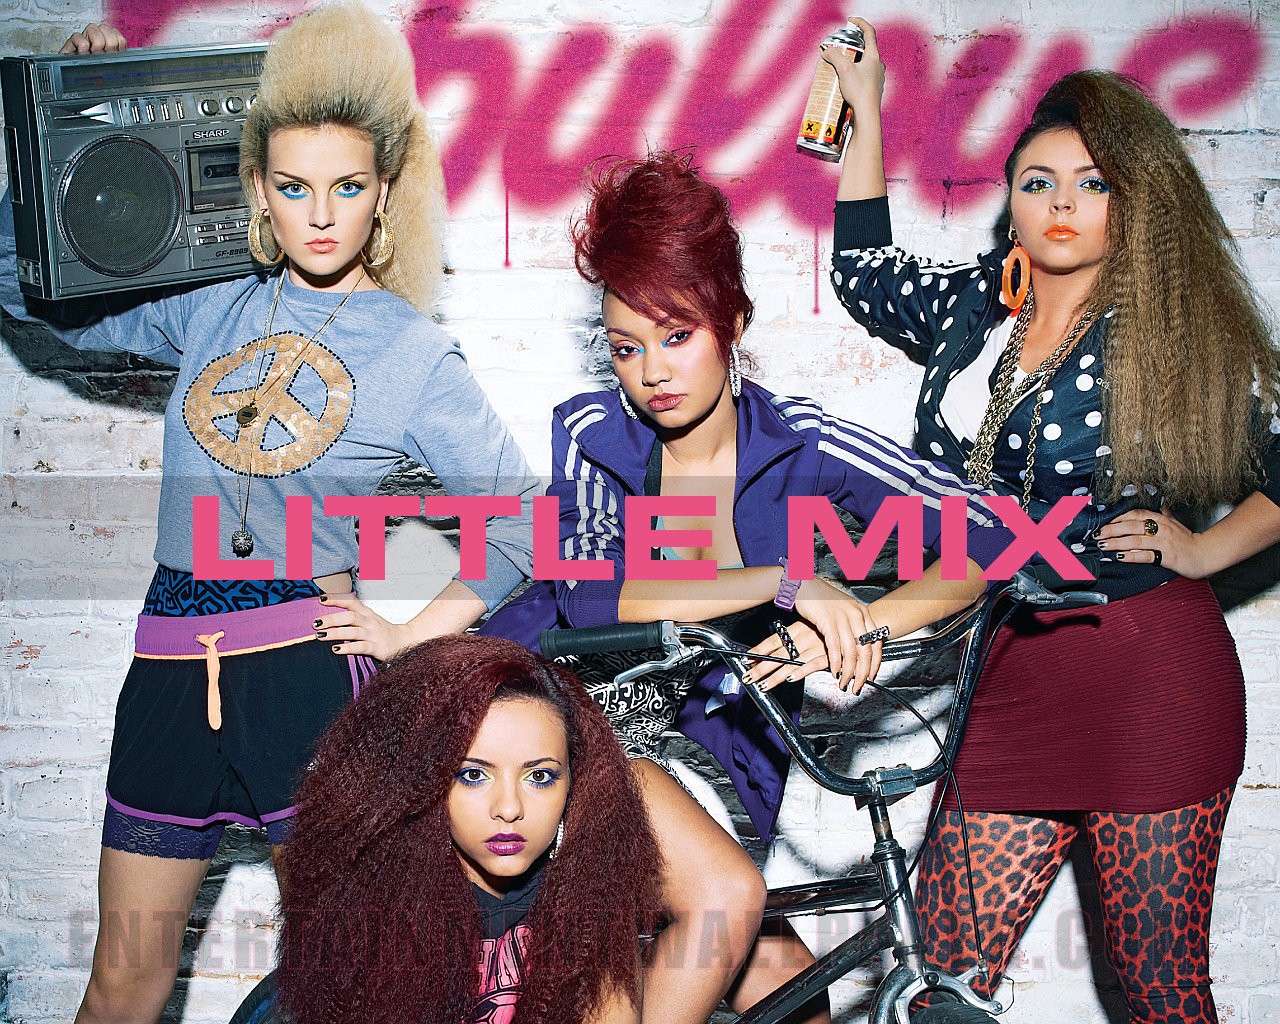 Little Mix S Wallpaper♥ - Little Mix Magazine Cover - HD Wallpaper 